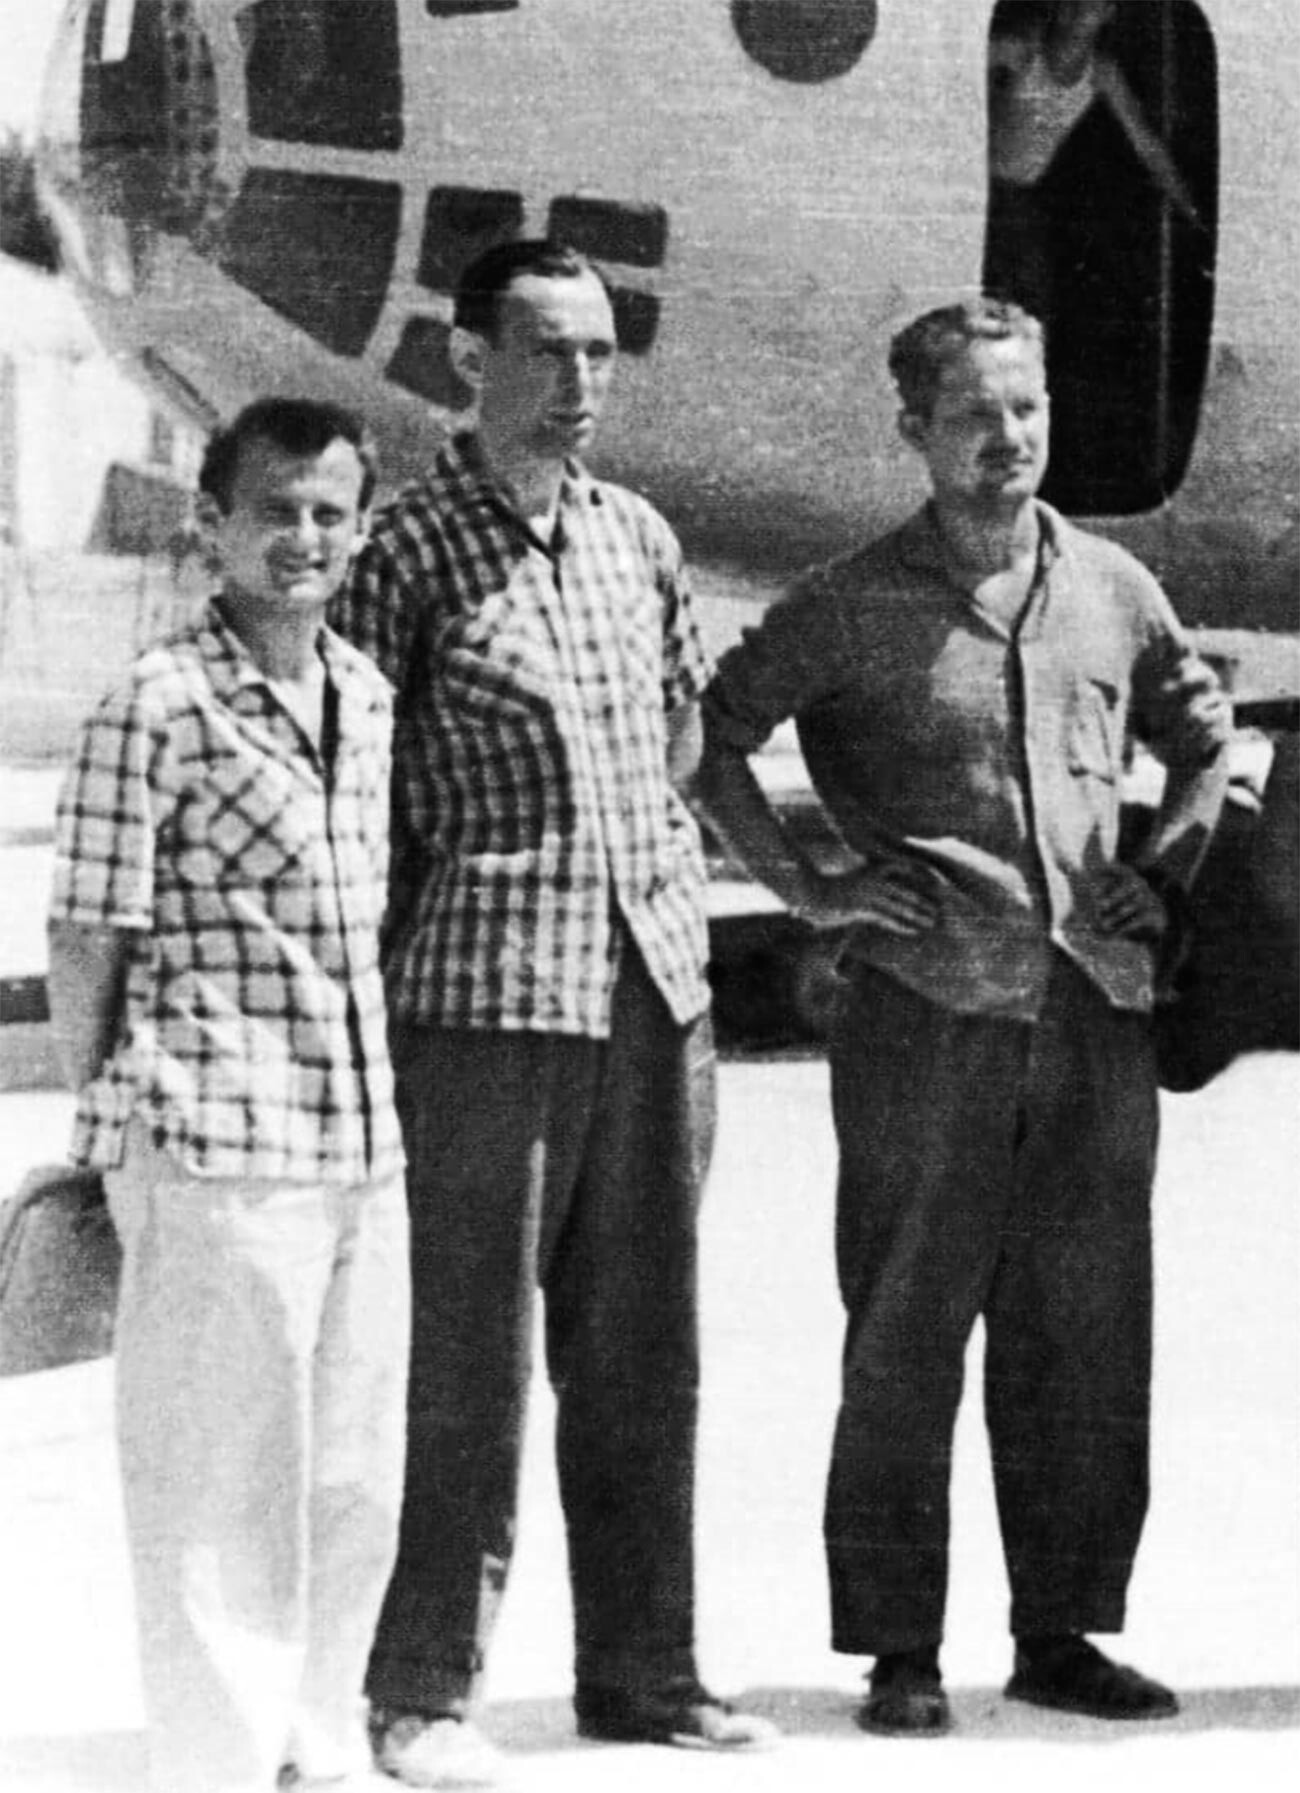 La tripulación de prueba del Ka-22 (de izquierda a derecha): el ingeniero principal V.A. Nikolaev, el comandante de la tripulación D.K. Efremov y el copiloto O.K. Yarkin, fallecidos el 28 de agosto de 1962.